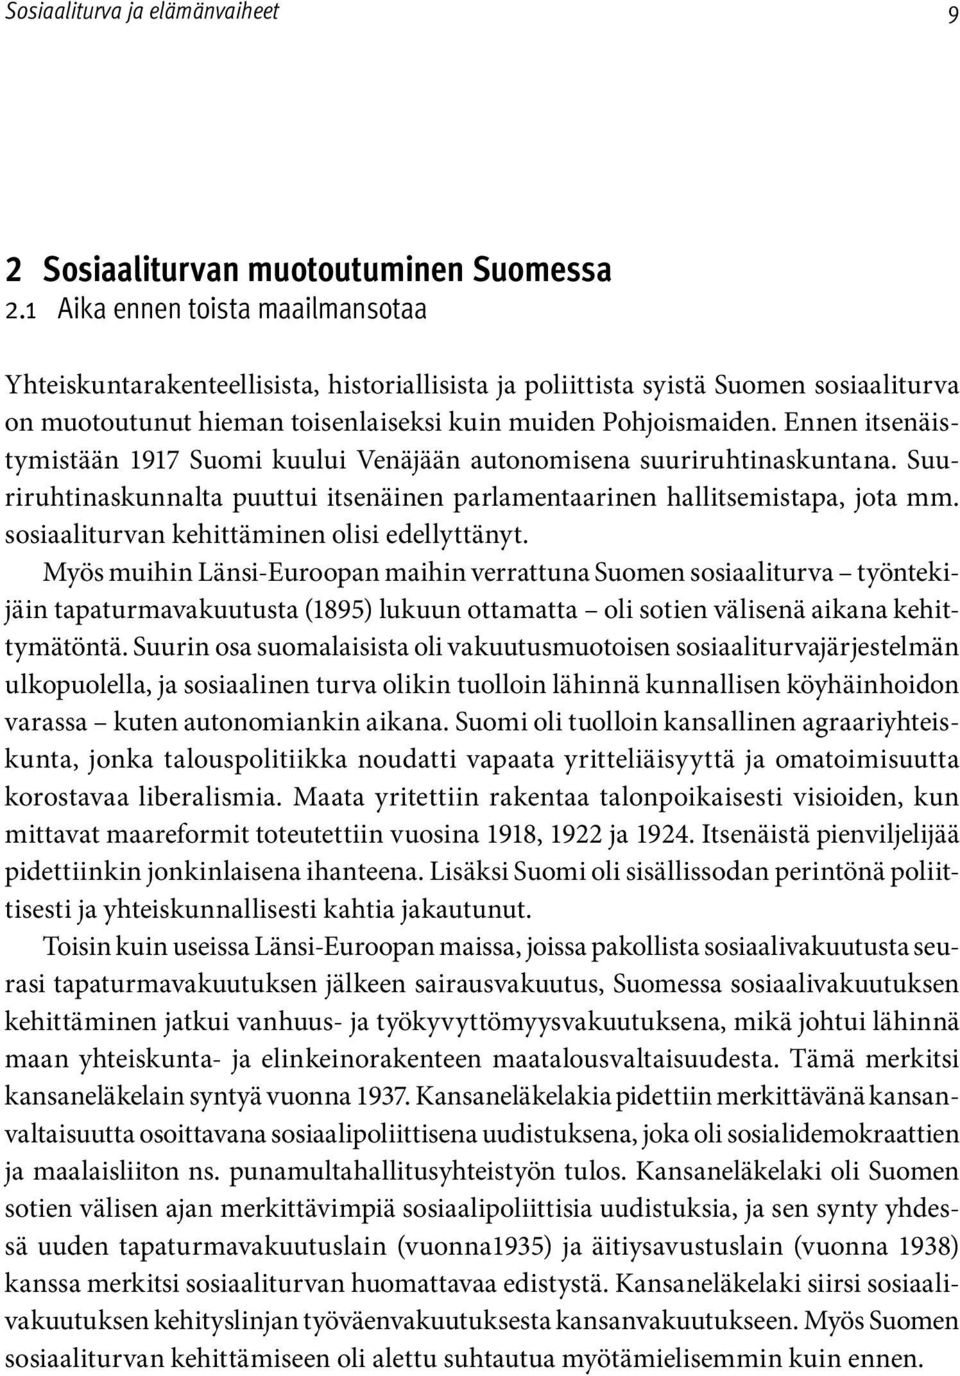 Ennen itsenäistymistään 1917 Suomi kuului Venäjään autonomisena suuriruhtinaskuntana. Suuriruhtinaskunnalta puuttui itsenäinen parlamentaarinen hallitsemistapa, jota mm.